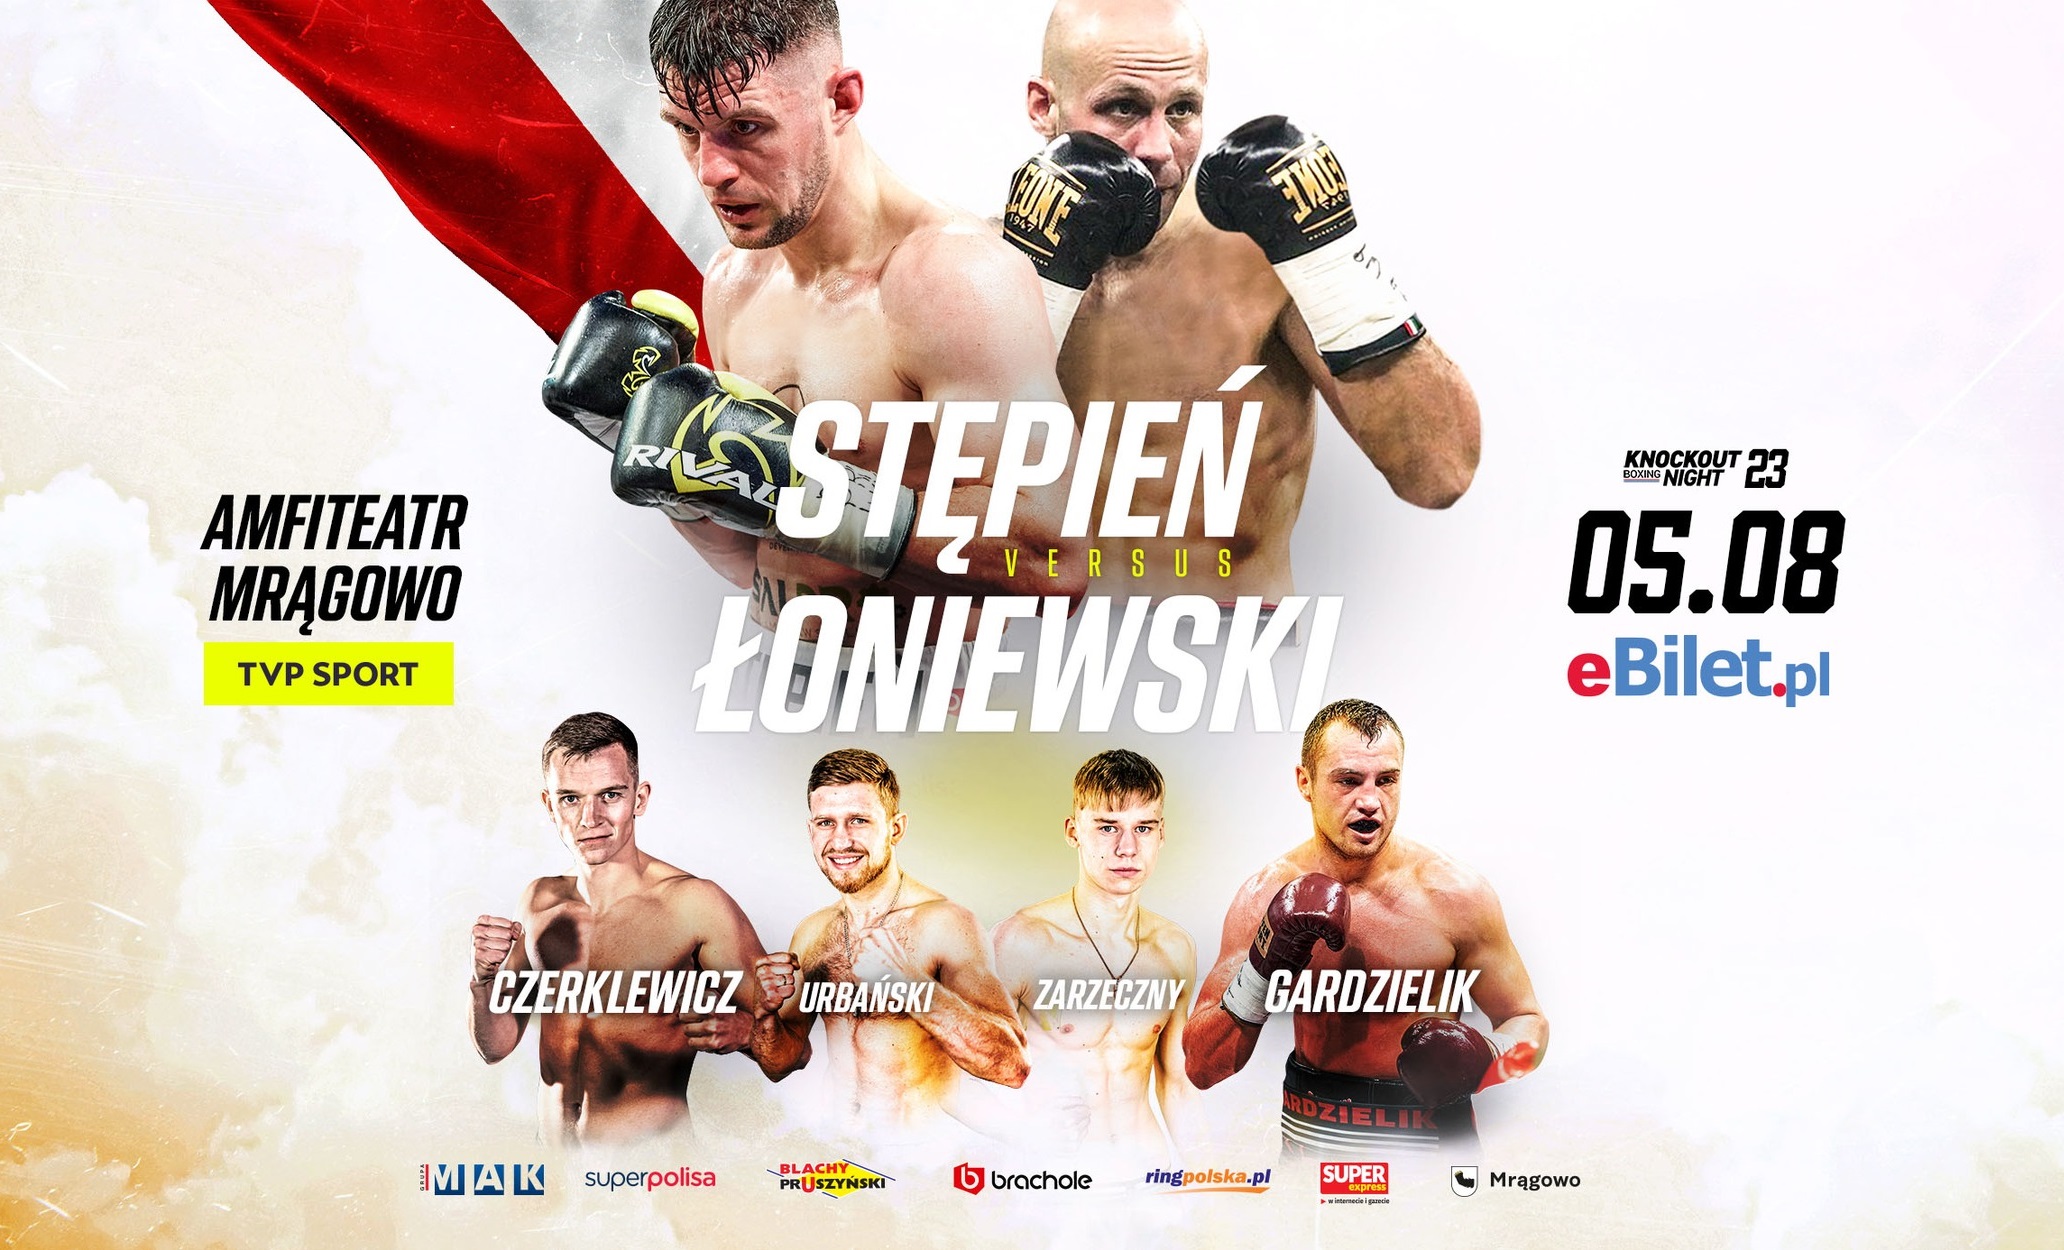 Obraz artykułu - KnockOut Boxing Night 23 w Mrągowie! W walce wieczoru Stępień powalczy z Łoniewskim!